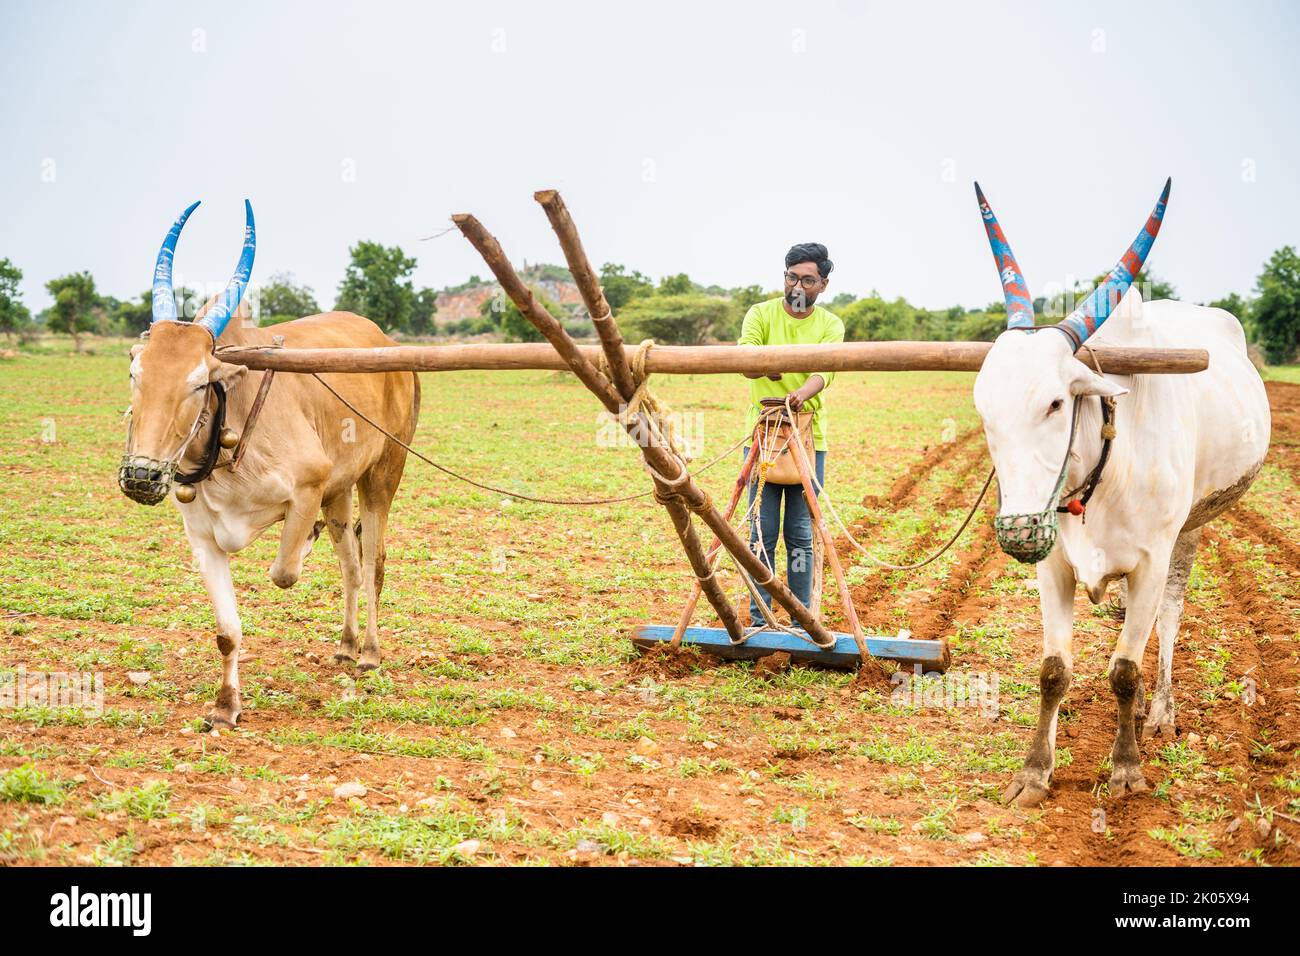 Jeune Indien moderne qui essaie de labourer ou d'utiliser l'agriculture traditionnelle pendant les vacances - concept d'agriculture, week-end loisirs Banque D'Images